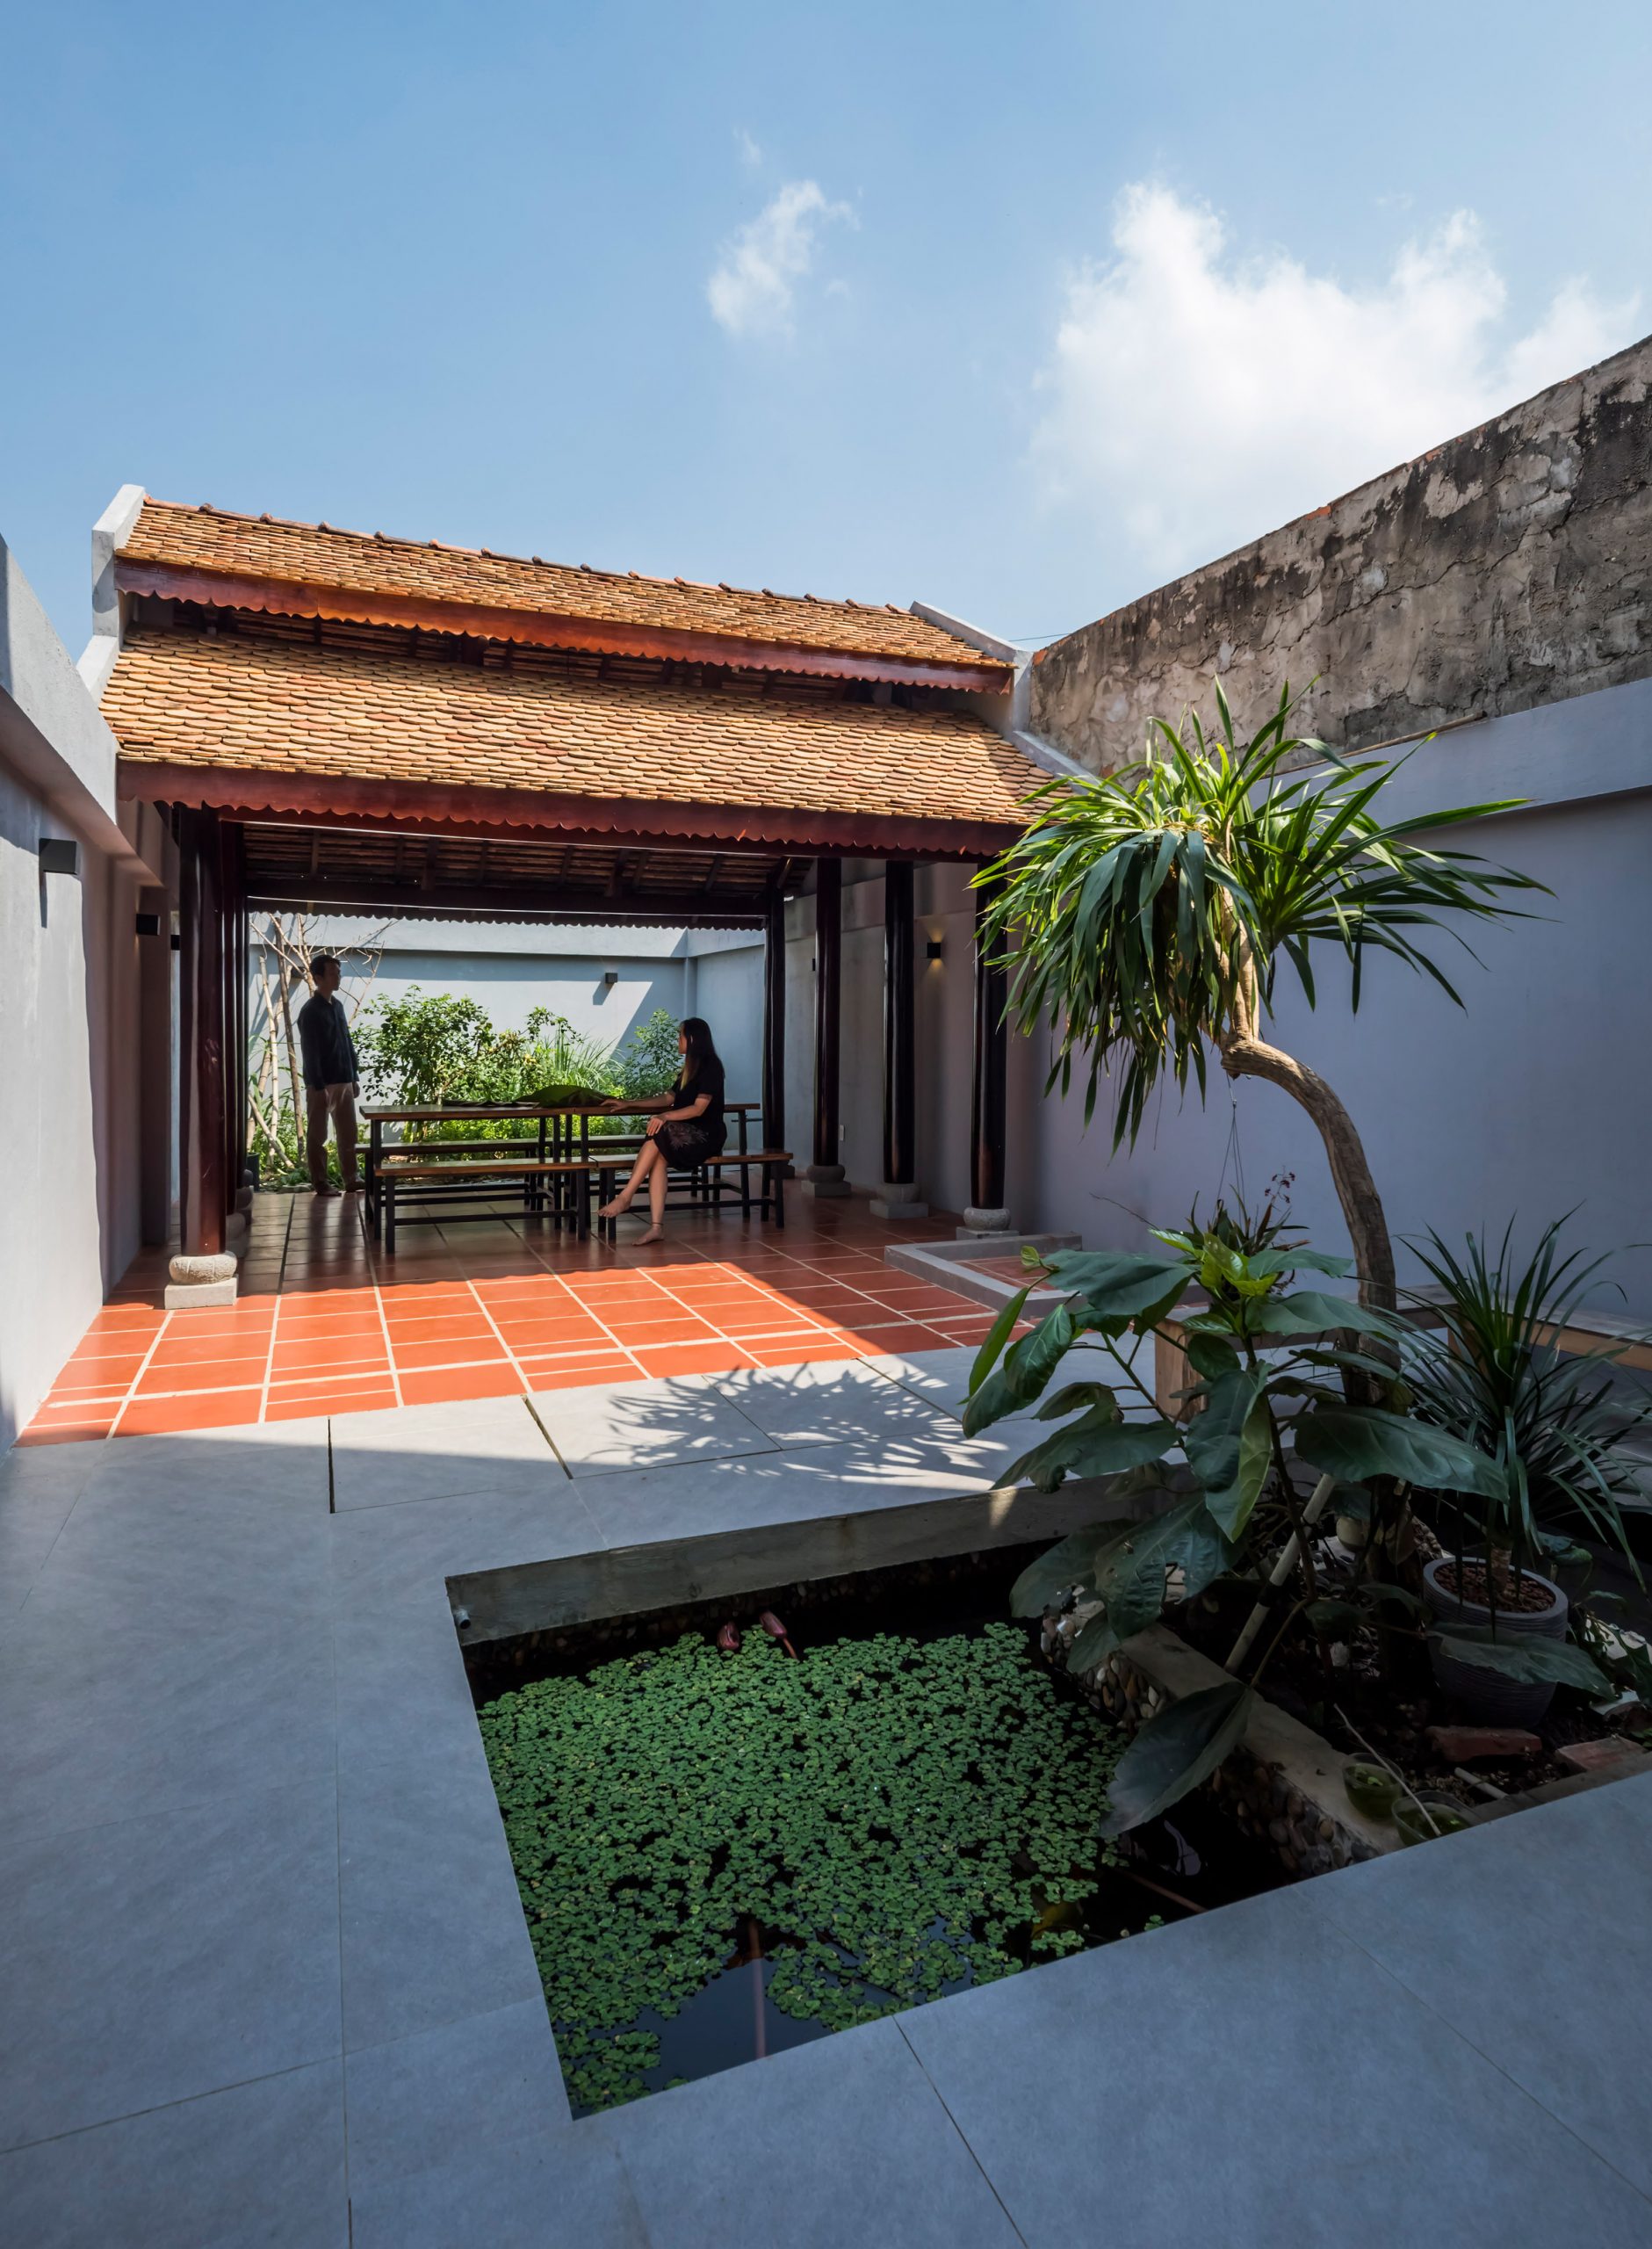 Garden in 2HIEN house in Vietnam by CTA